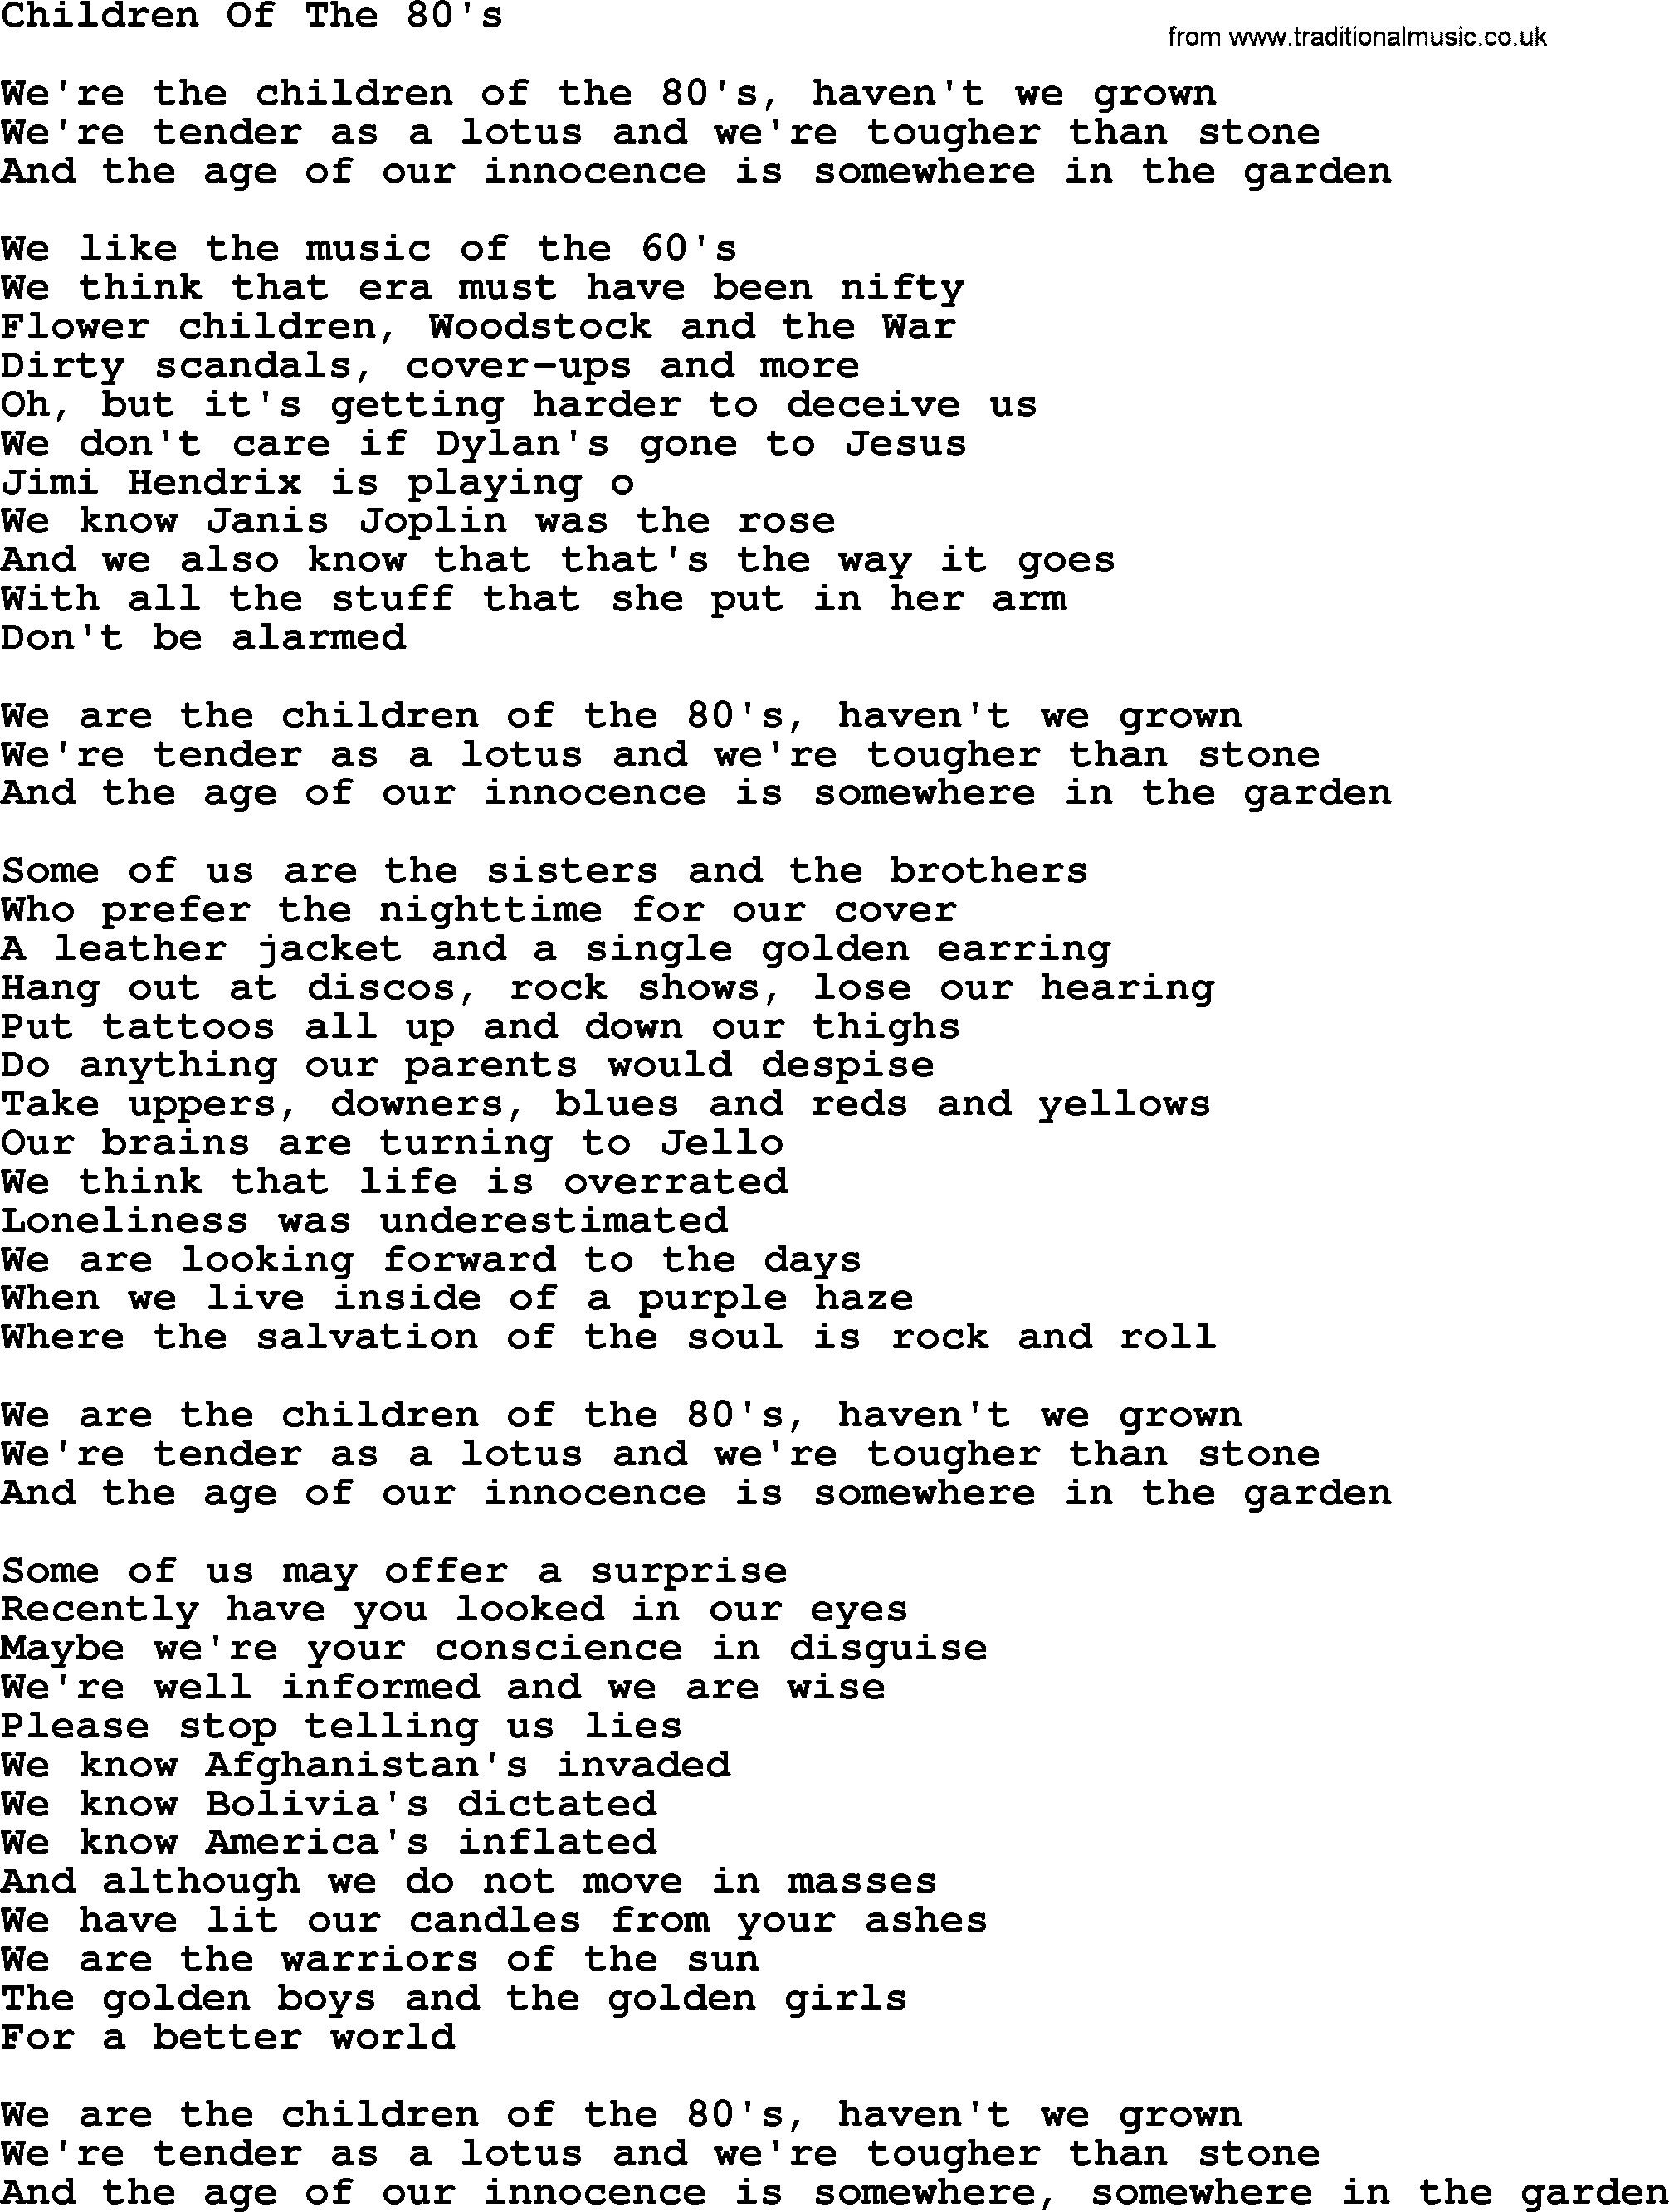 Joan Baez song Children Of The 80's, lyrics